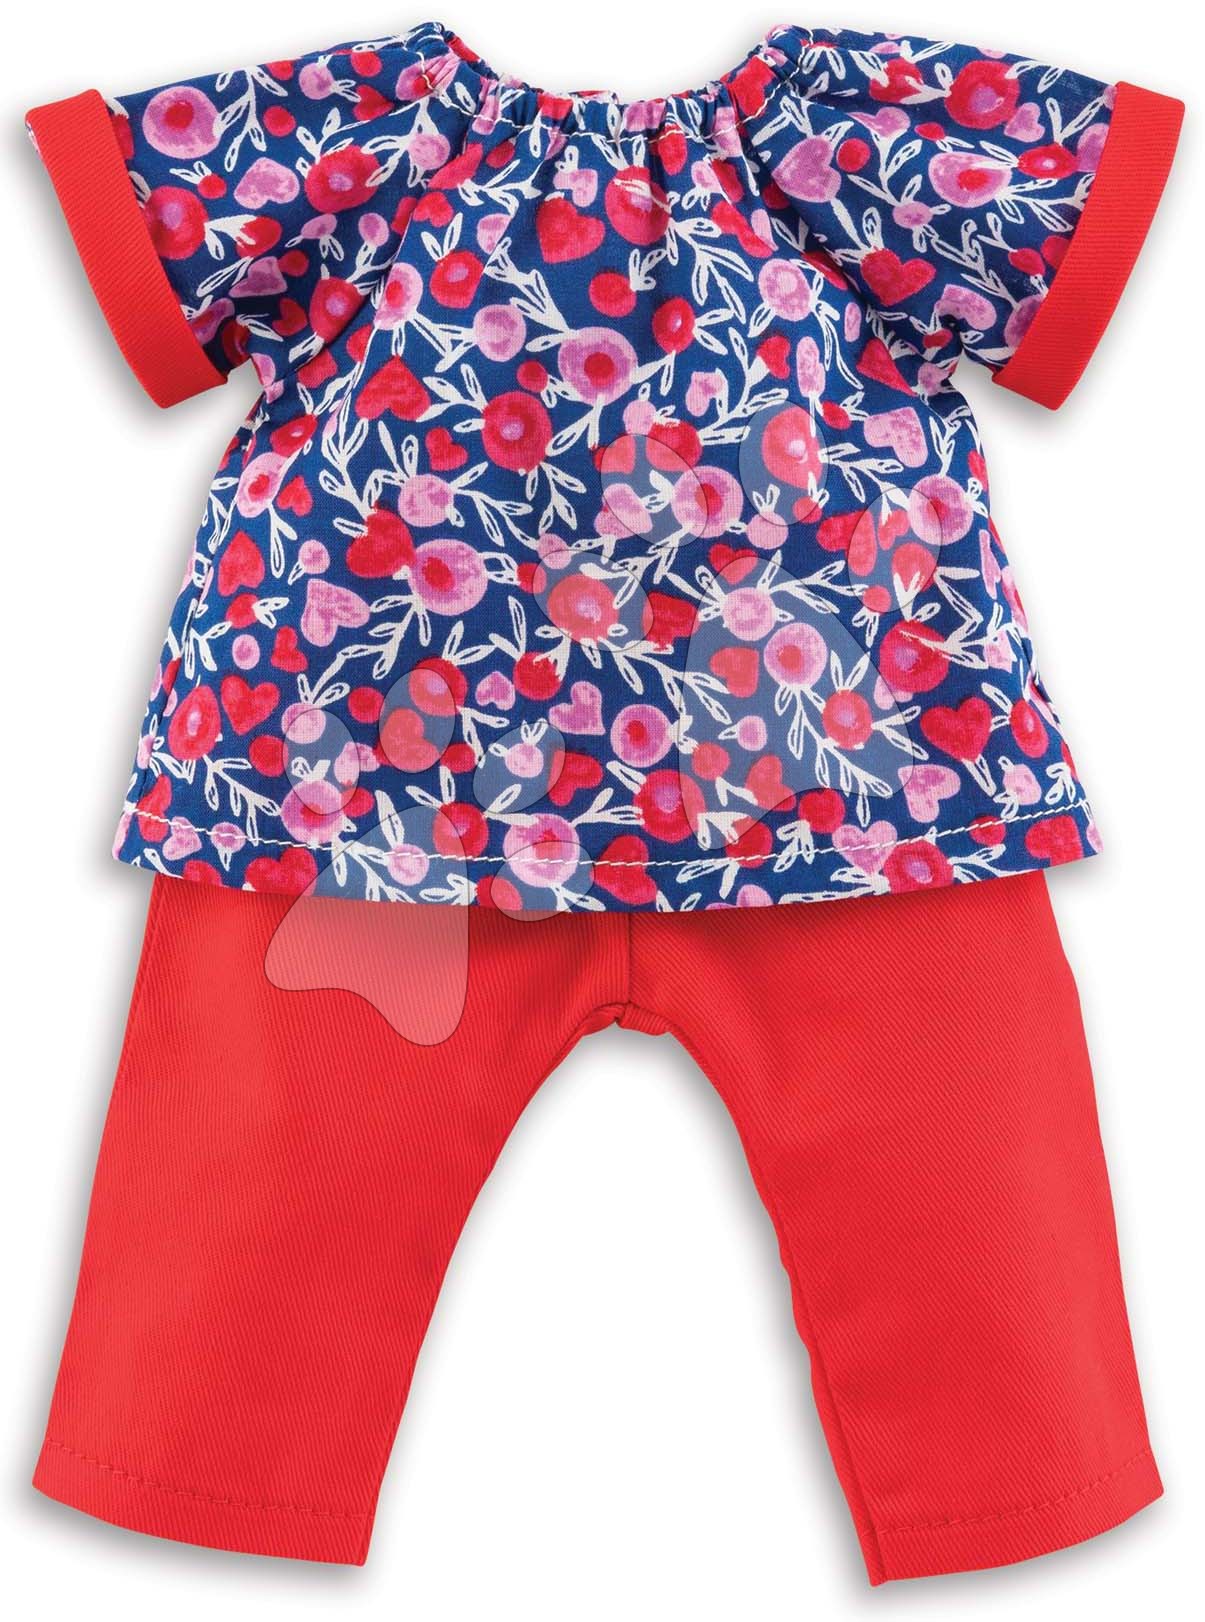 Oblečenie Blouse & Pants Ma Corolle pre 36 cm bábiku od 4 rokov